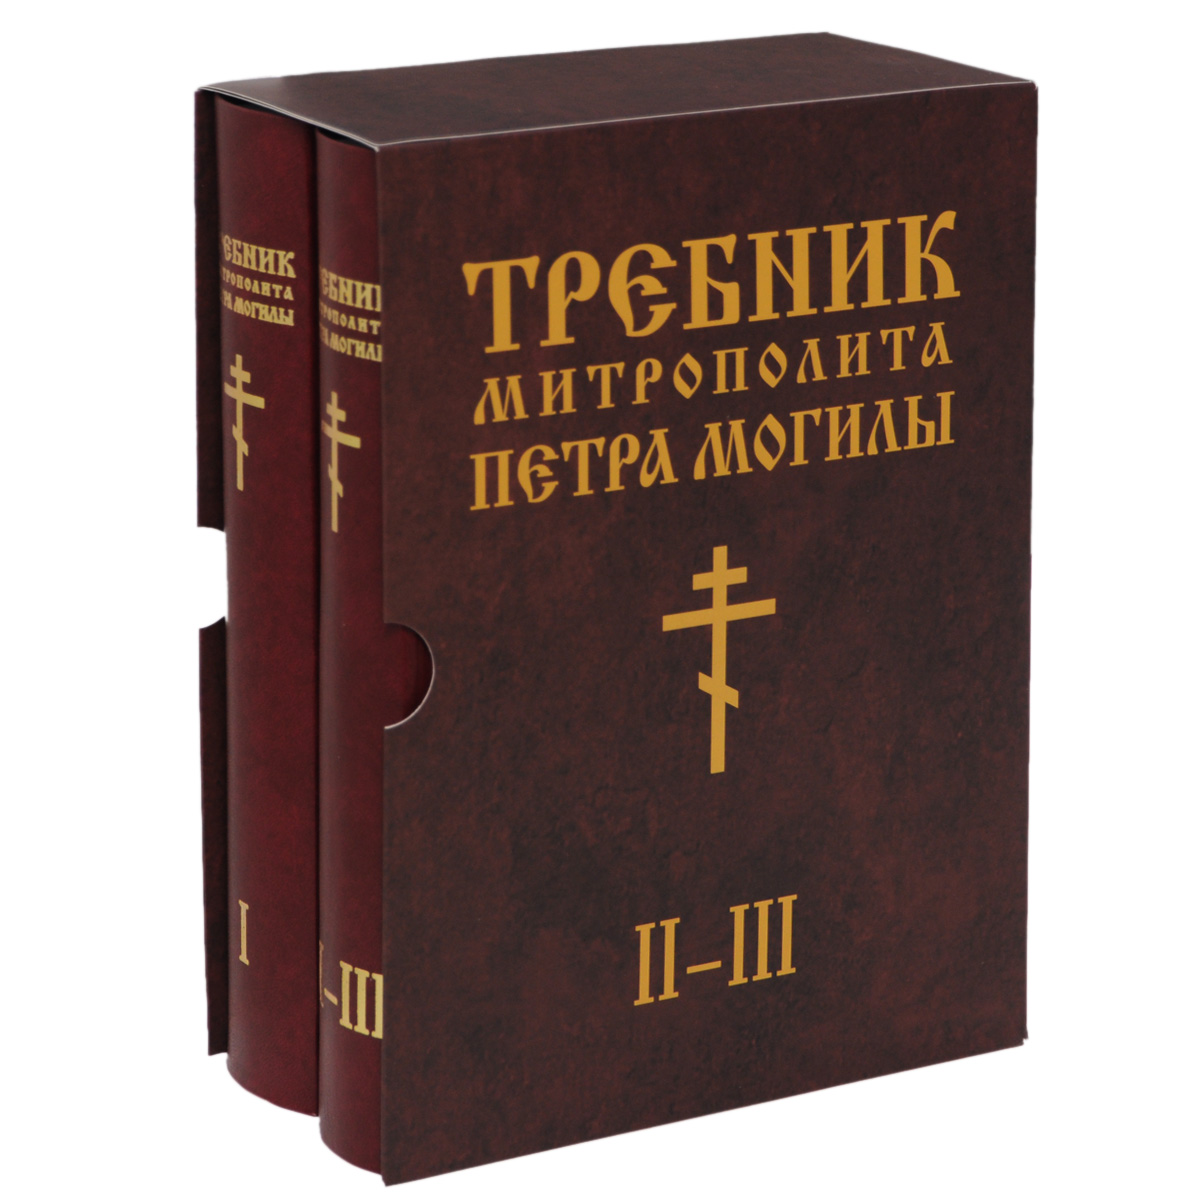 Требник Митрополита Петра Могилы (комплект из 2 книг)